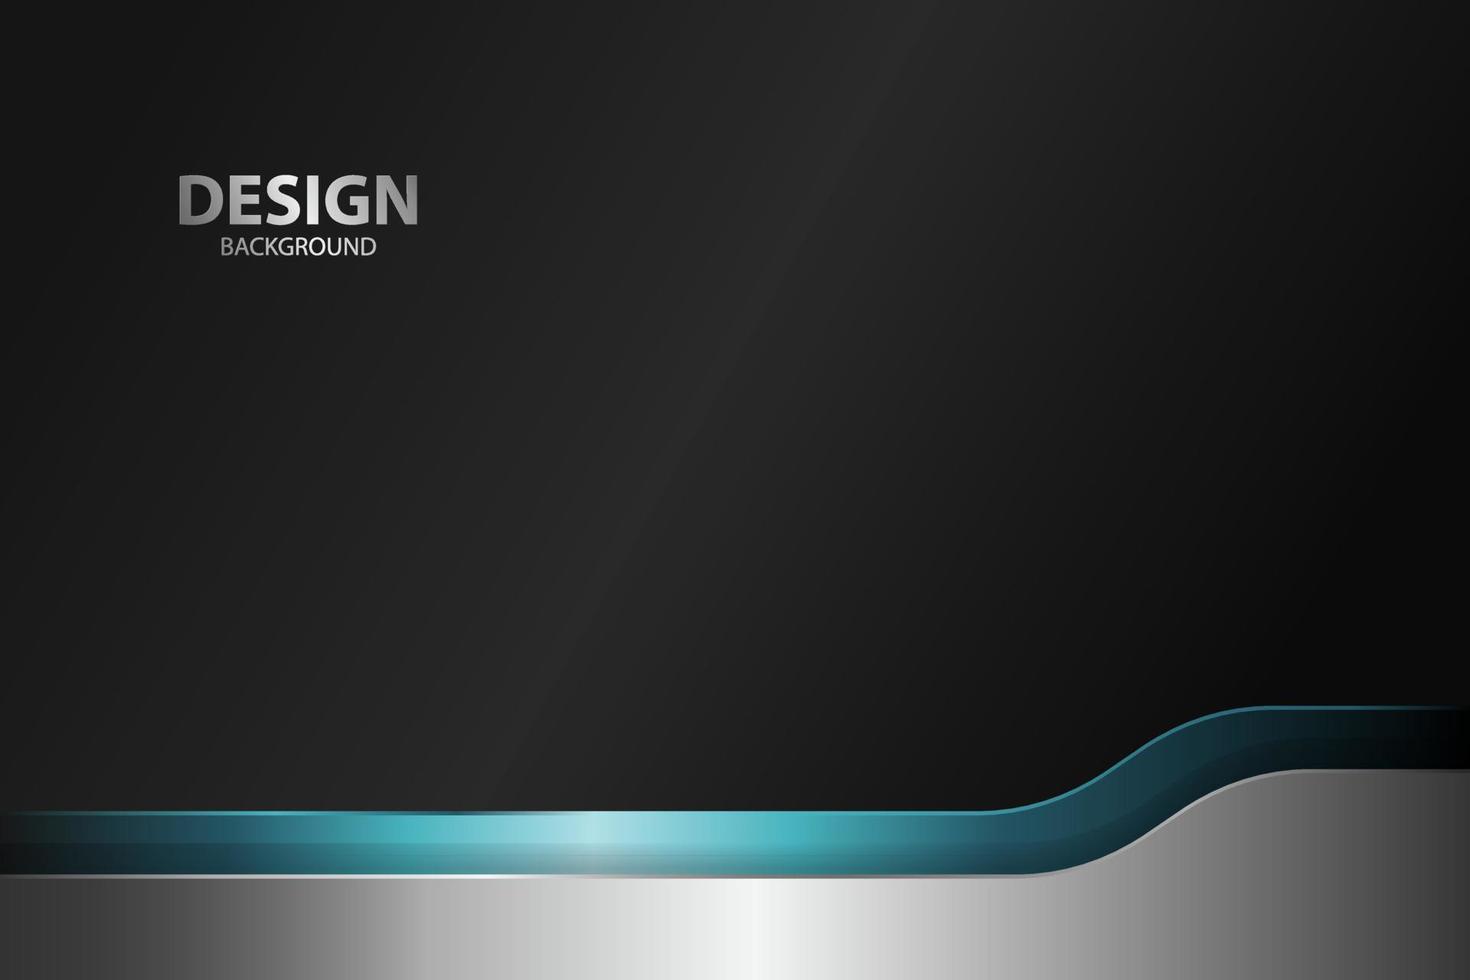 abstrakt bakgrund banner med färg kreativa digitala ljus modern vektor